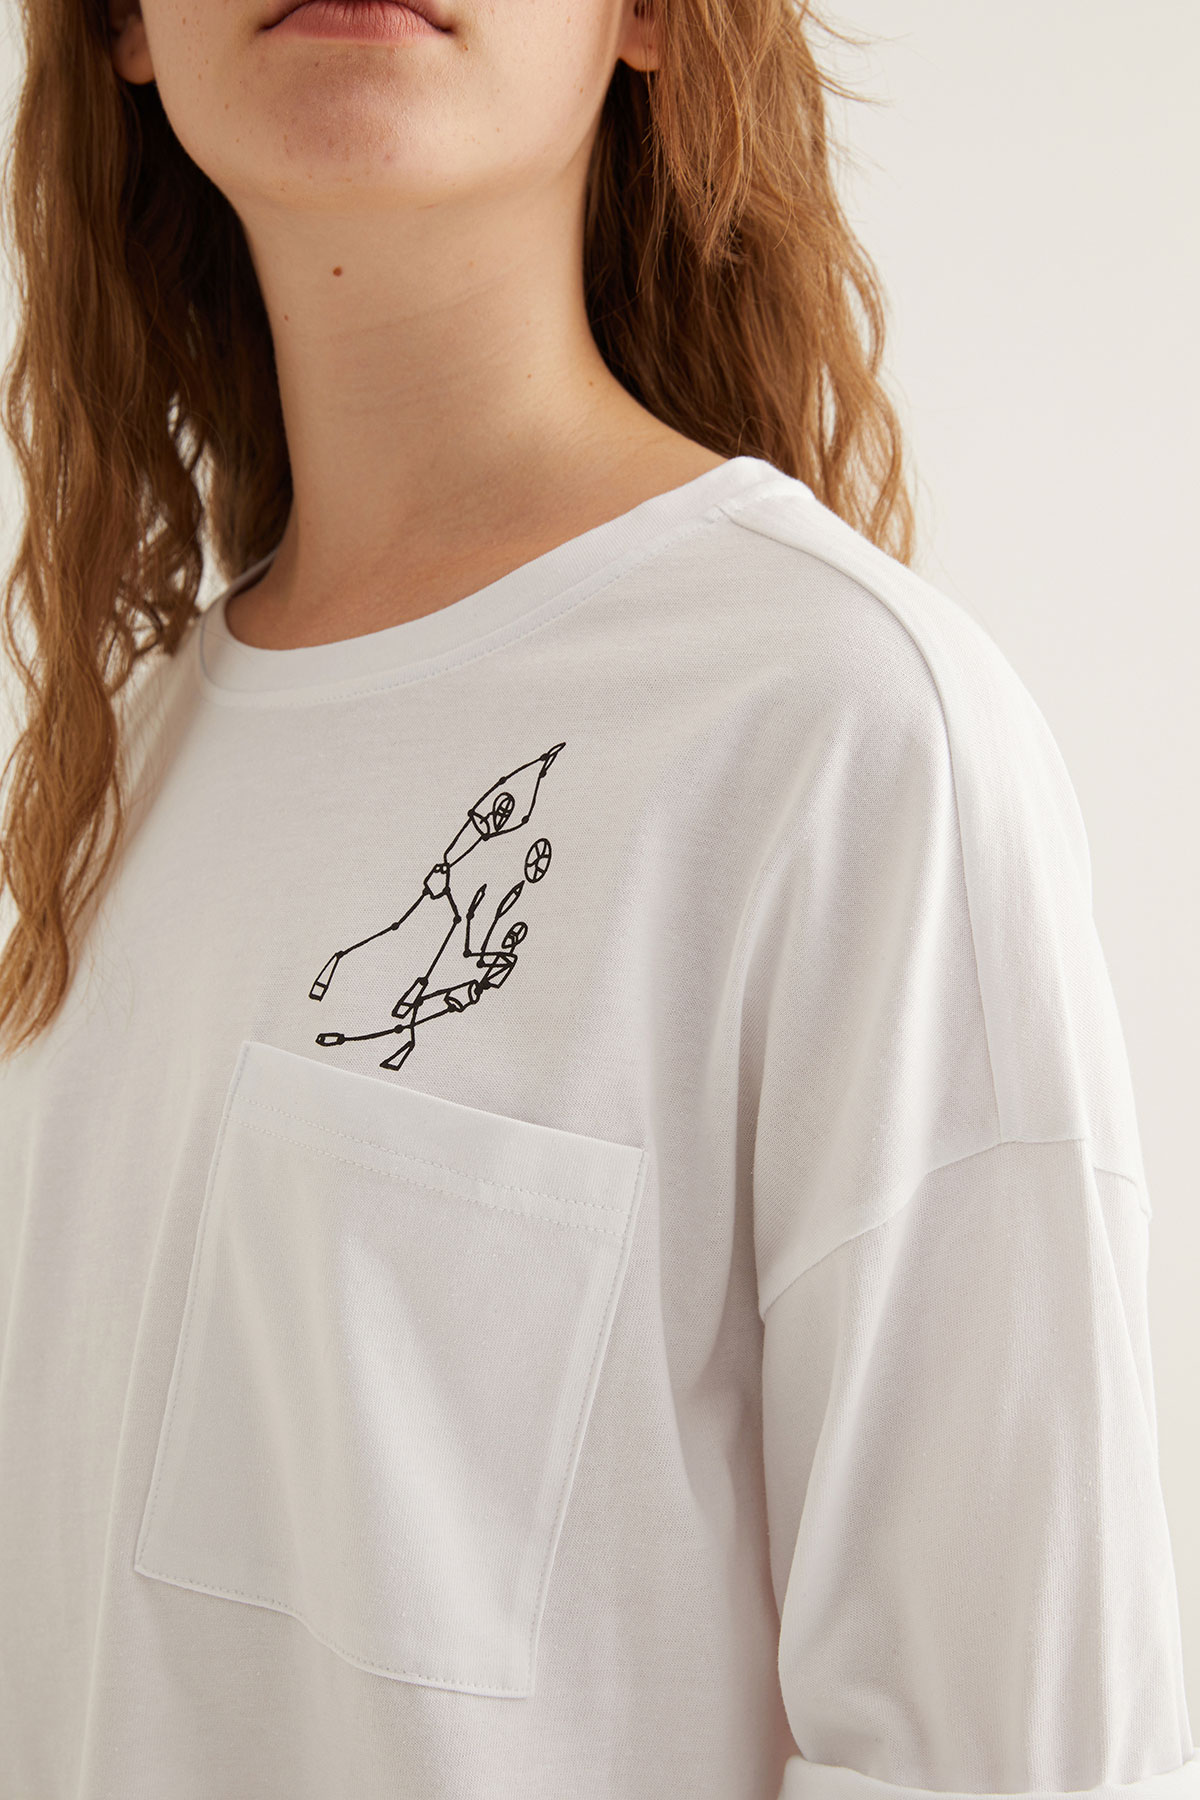 Kadın Pamuklu Cepli Baskı Detaylı Kısa Kollu T-shirt